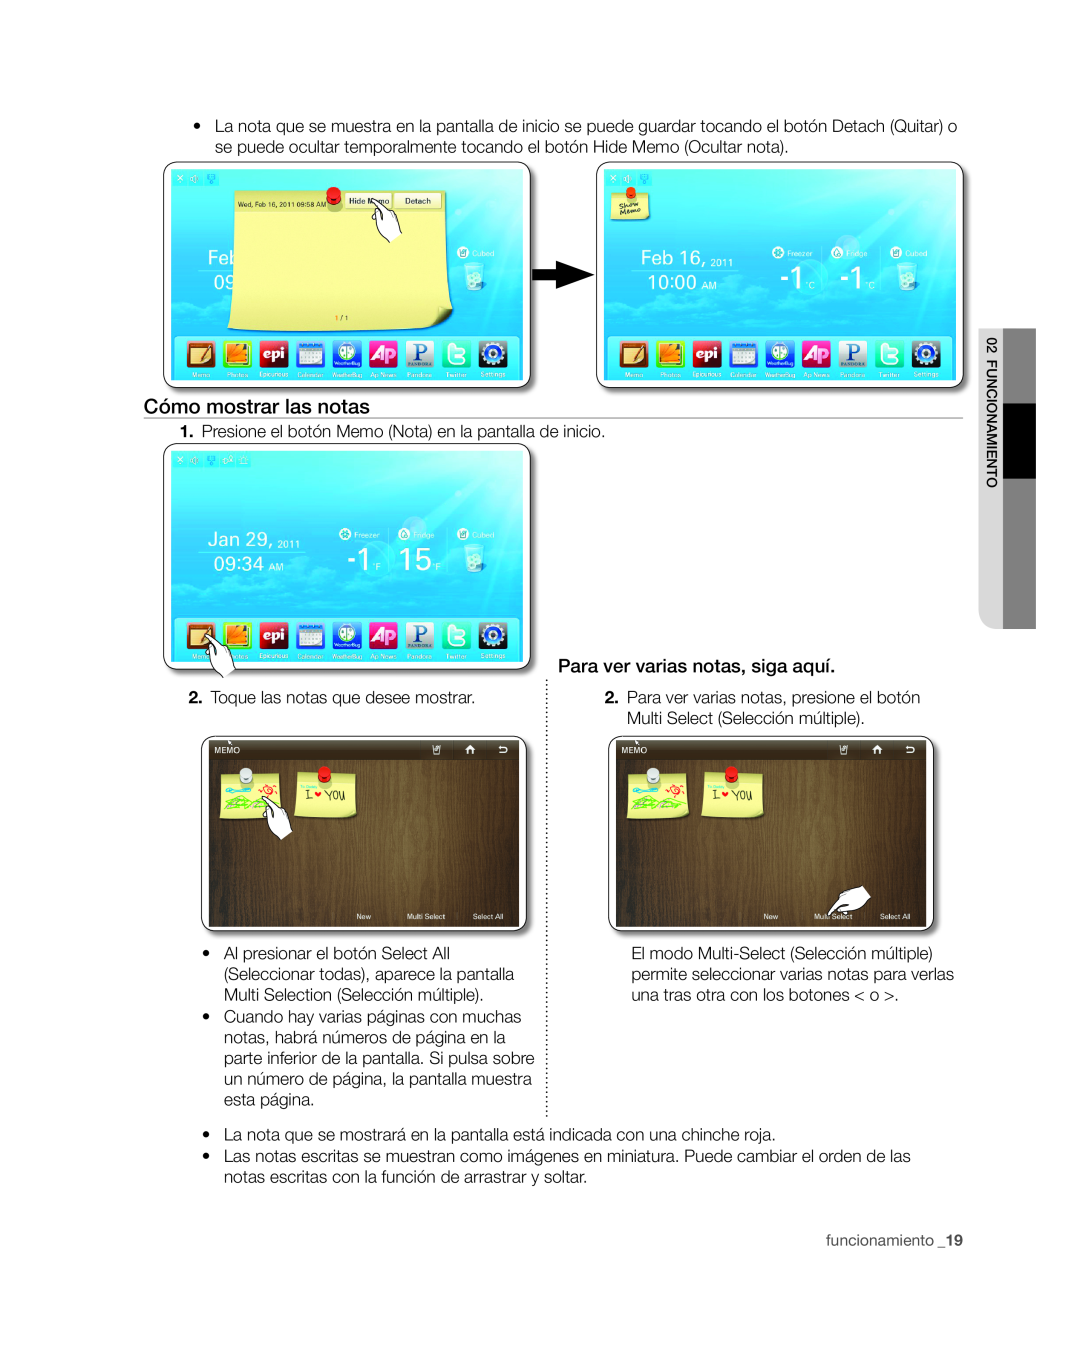 Samsung RSG309** user manual Cómo mostrar las notas, Para ver varias notas, siga aquí 